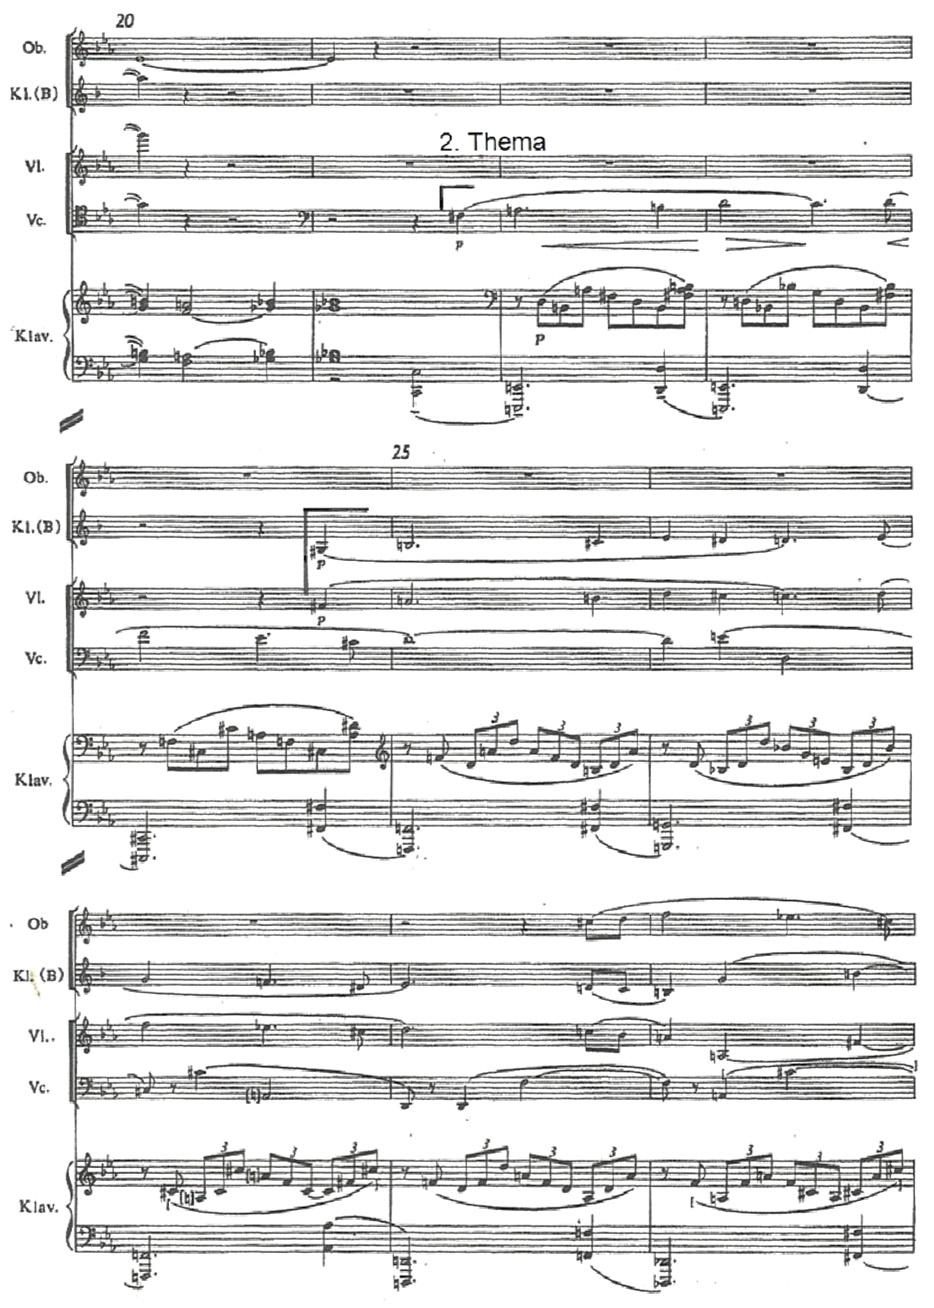 127 Notenbeispiel 3: Schönberg, Ein Stelldichein, Takte 20 29 Dies wird ab Takt 25 durch Klarinette und Violine, die im Einklang, somit parallel geführt werden, imitiert, wobei die Oboe in Takt 28